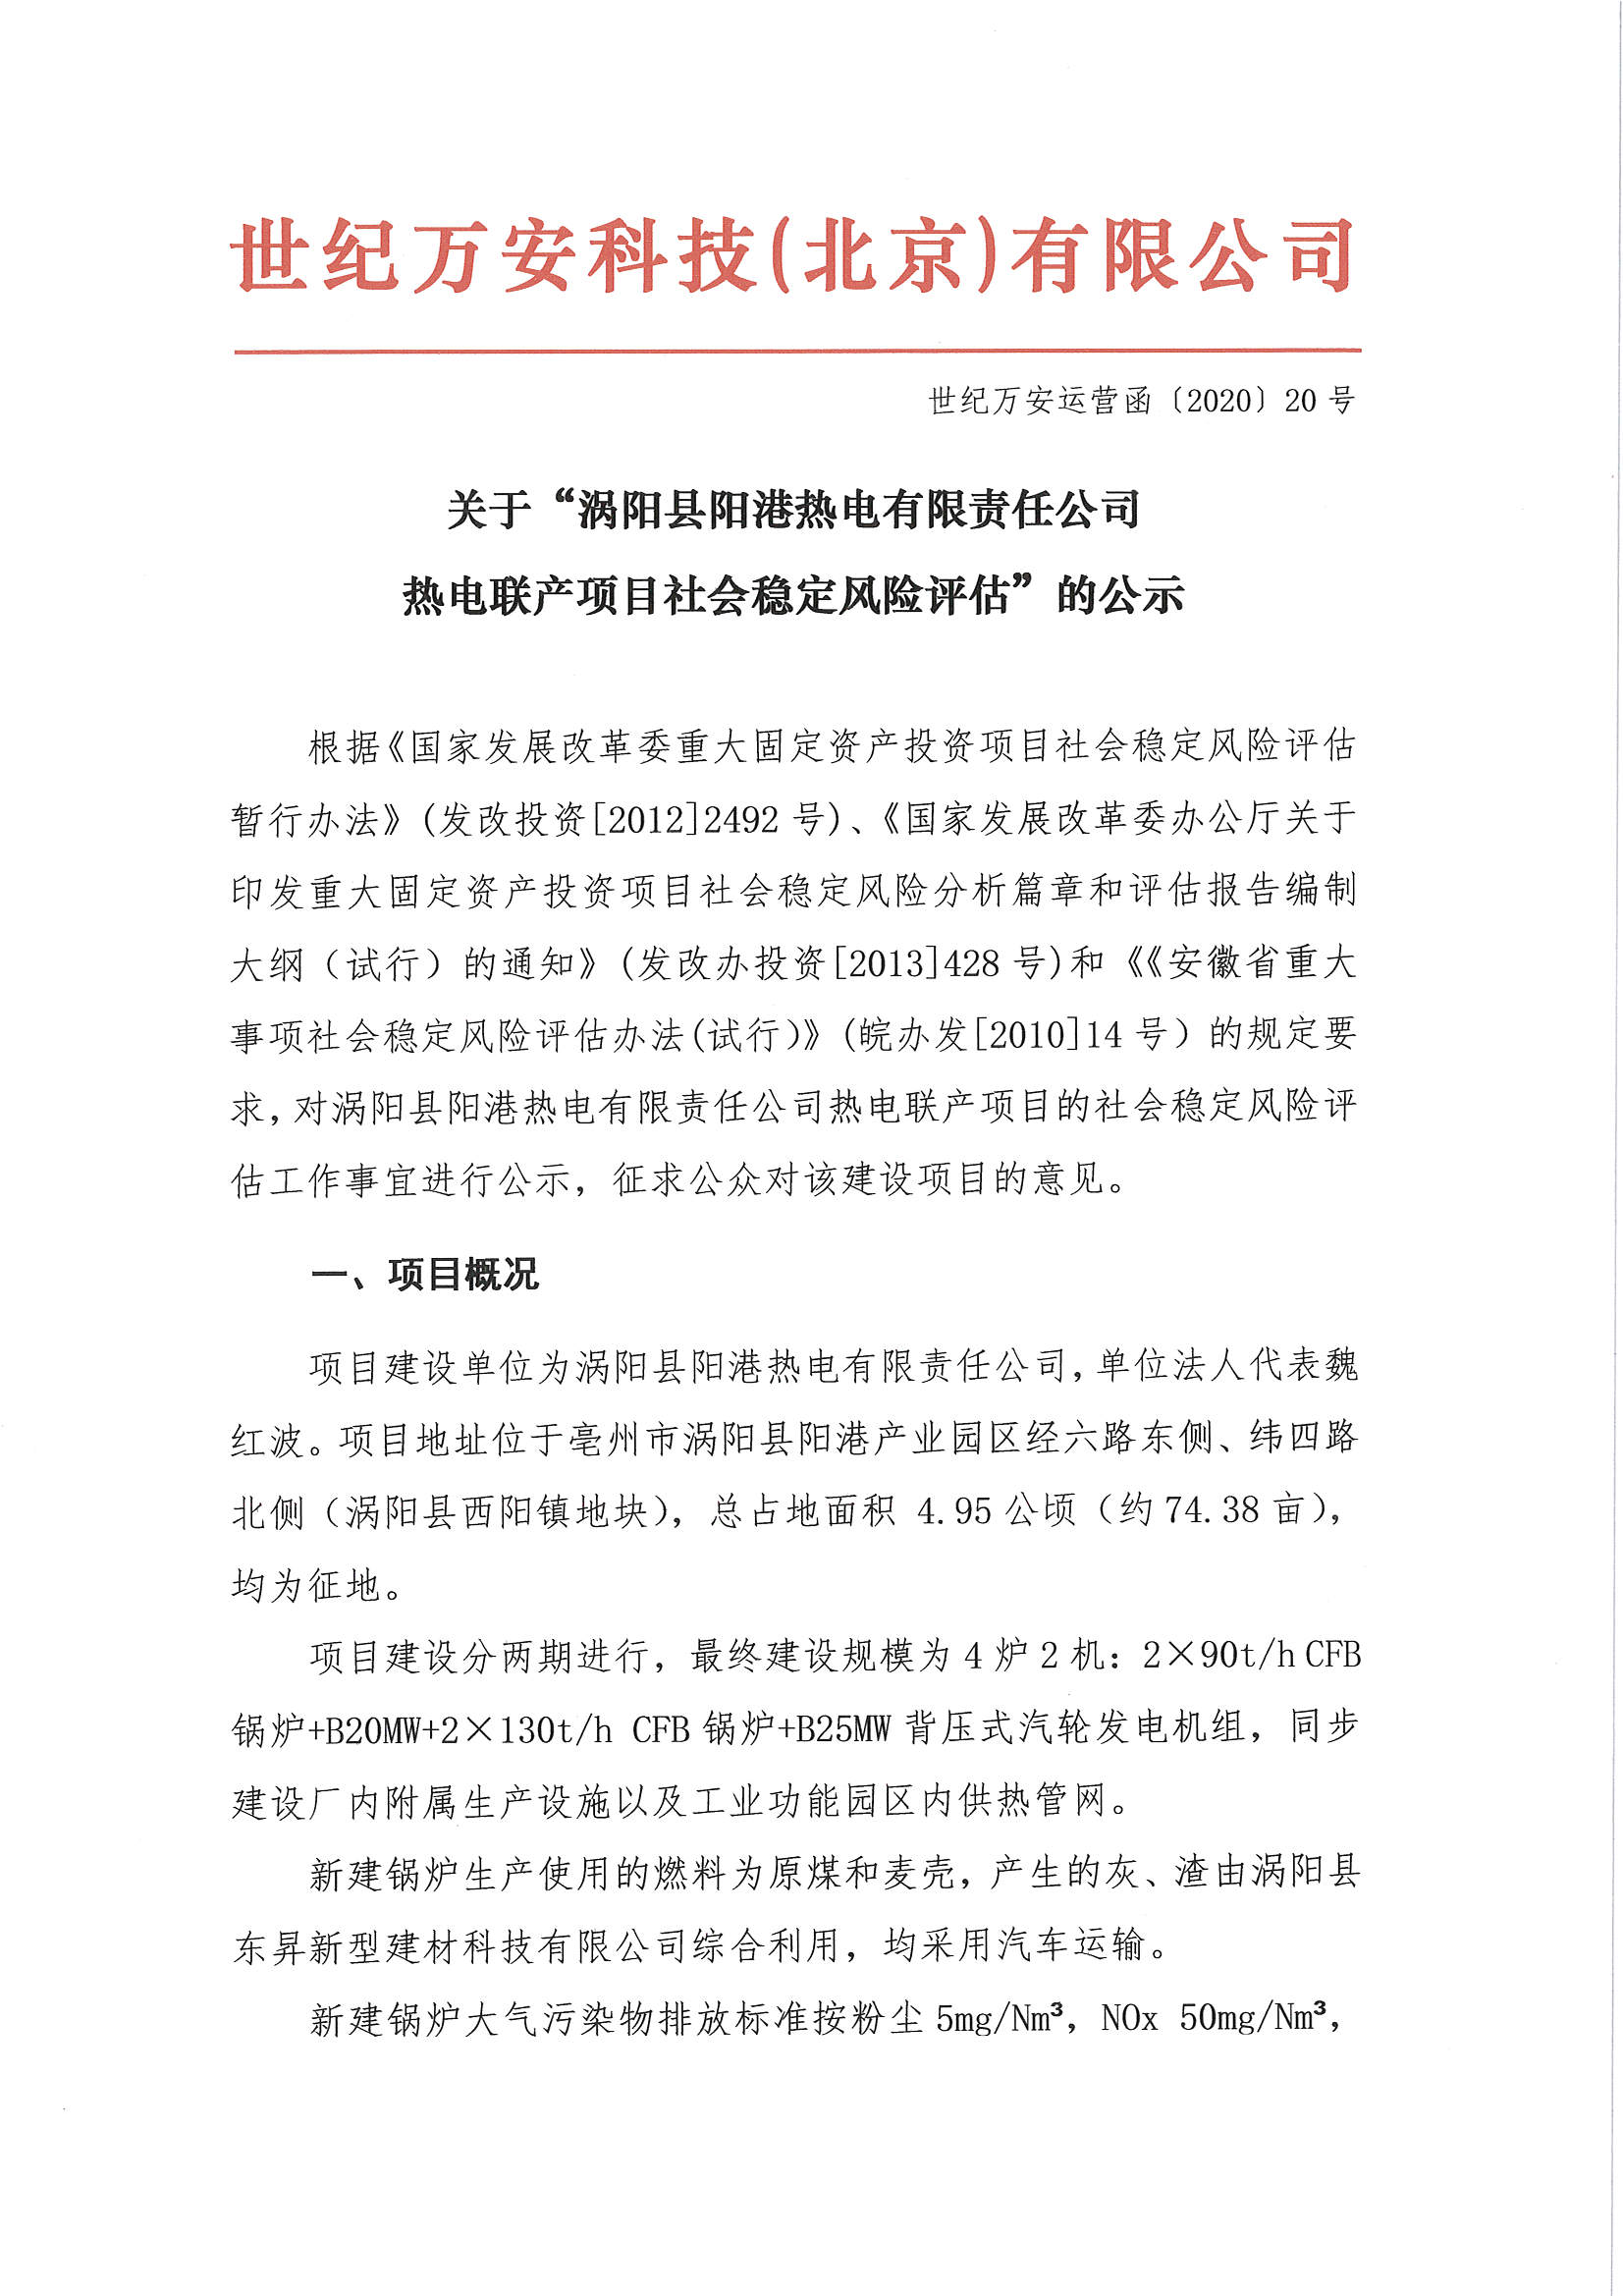 关于“涡阳县阳港热电有限责任公司热电联产项目社会稳定风险评估”的公示_页面_1.jpg